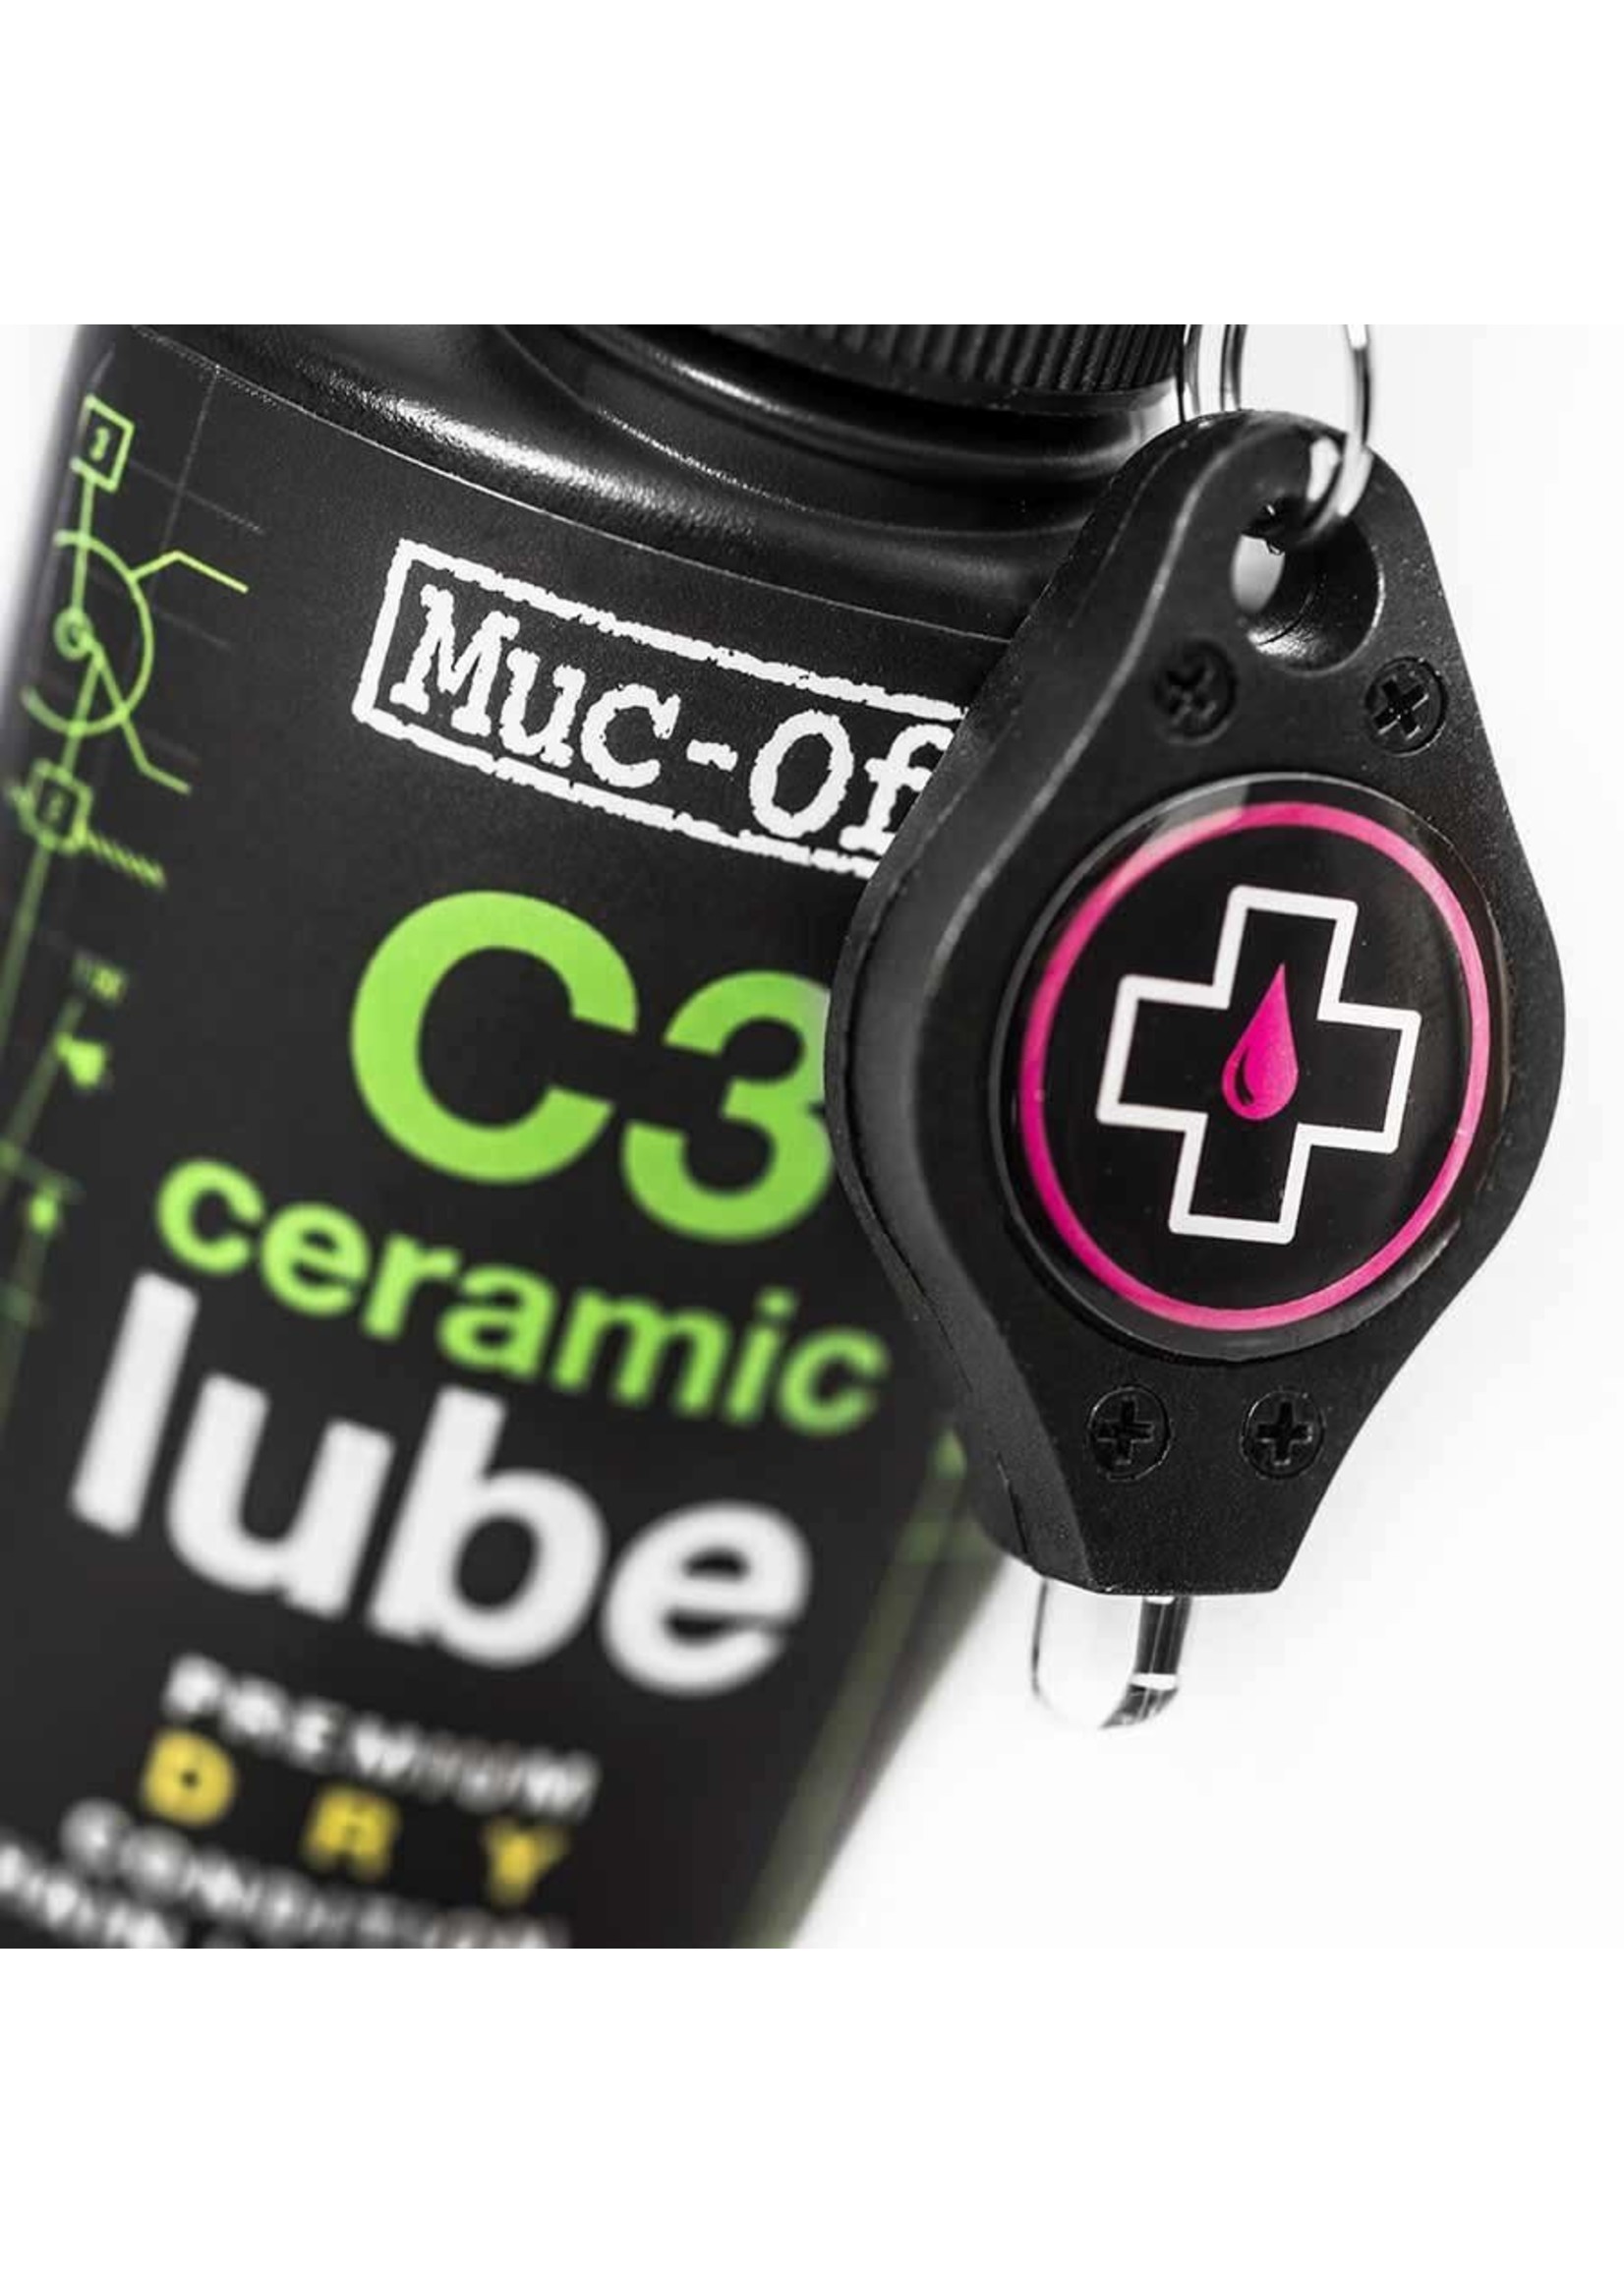 Muc-Off Lubrifiant pour Conditions Sèches Muc-Off C3 Ceramic Dry  120ml avec Lampe UV